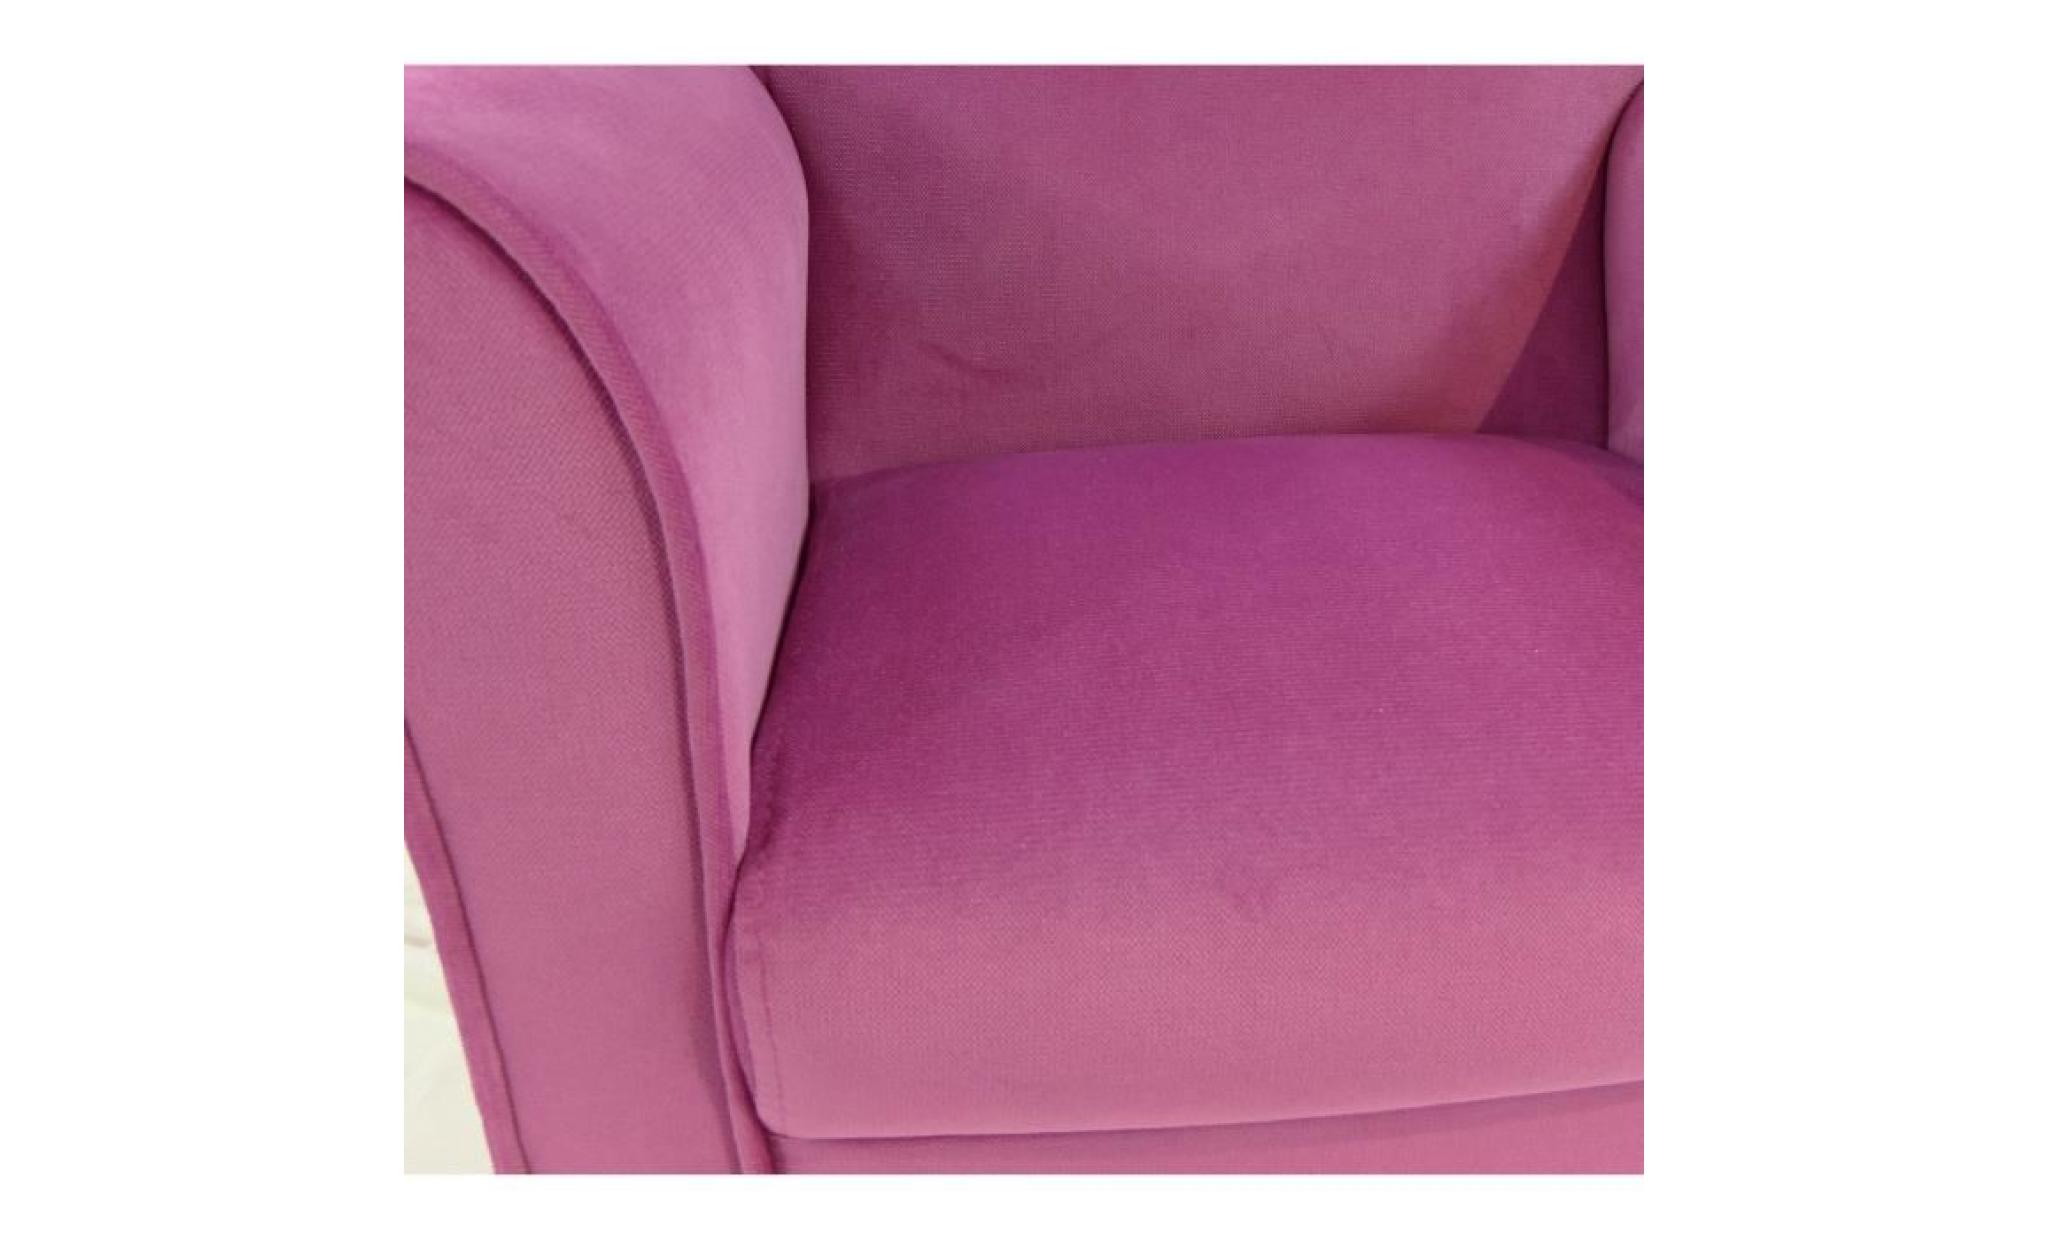 breed fauteuil club enfant en bois pin massif   tissu velours rose   scandinave   l 50 x p 39 cm pas cher